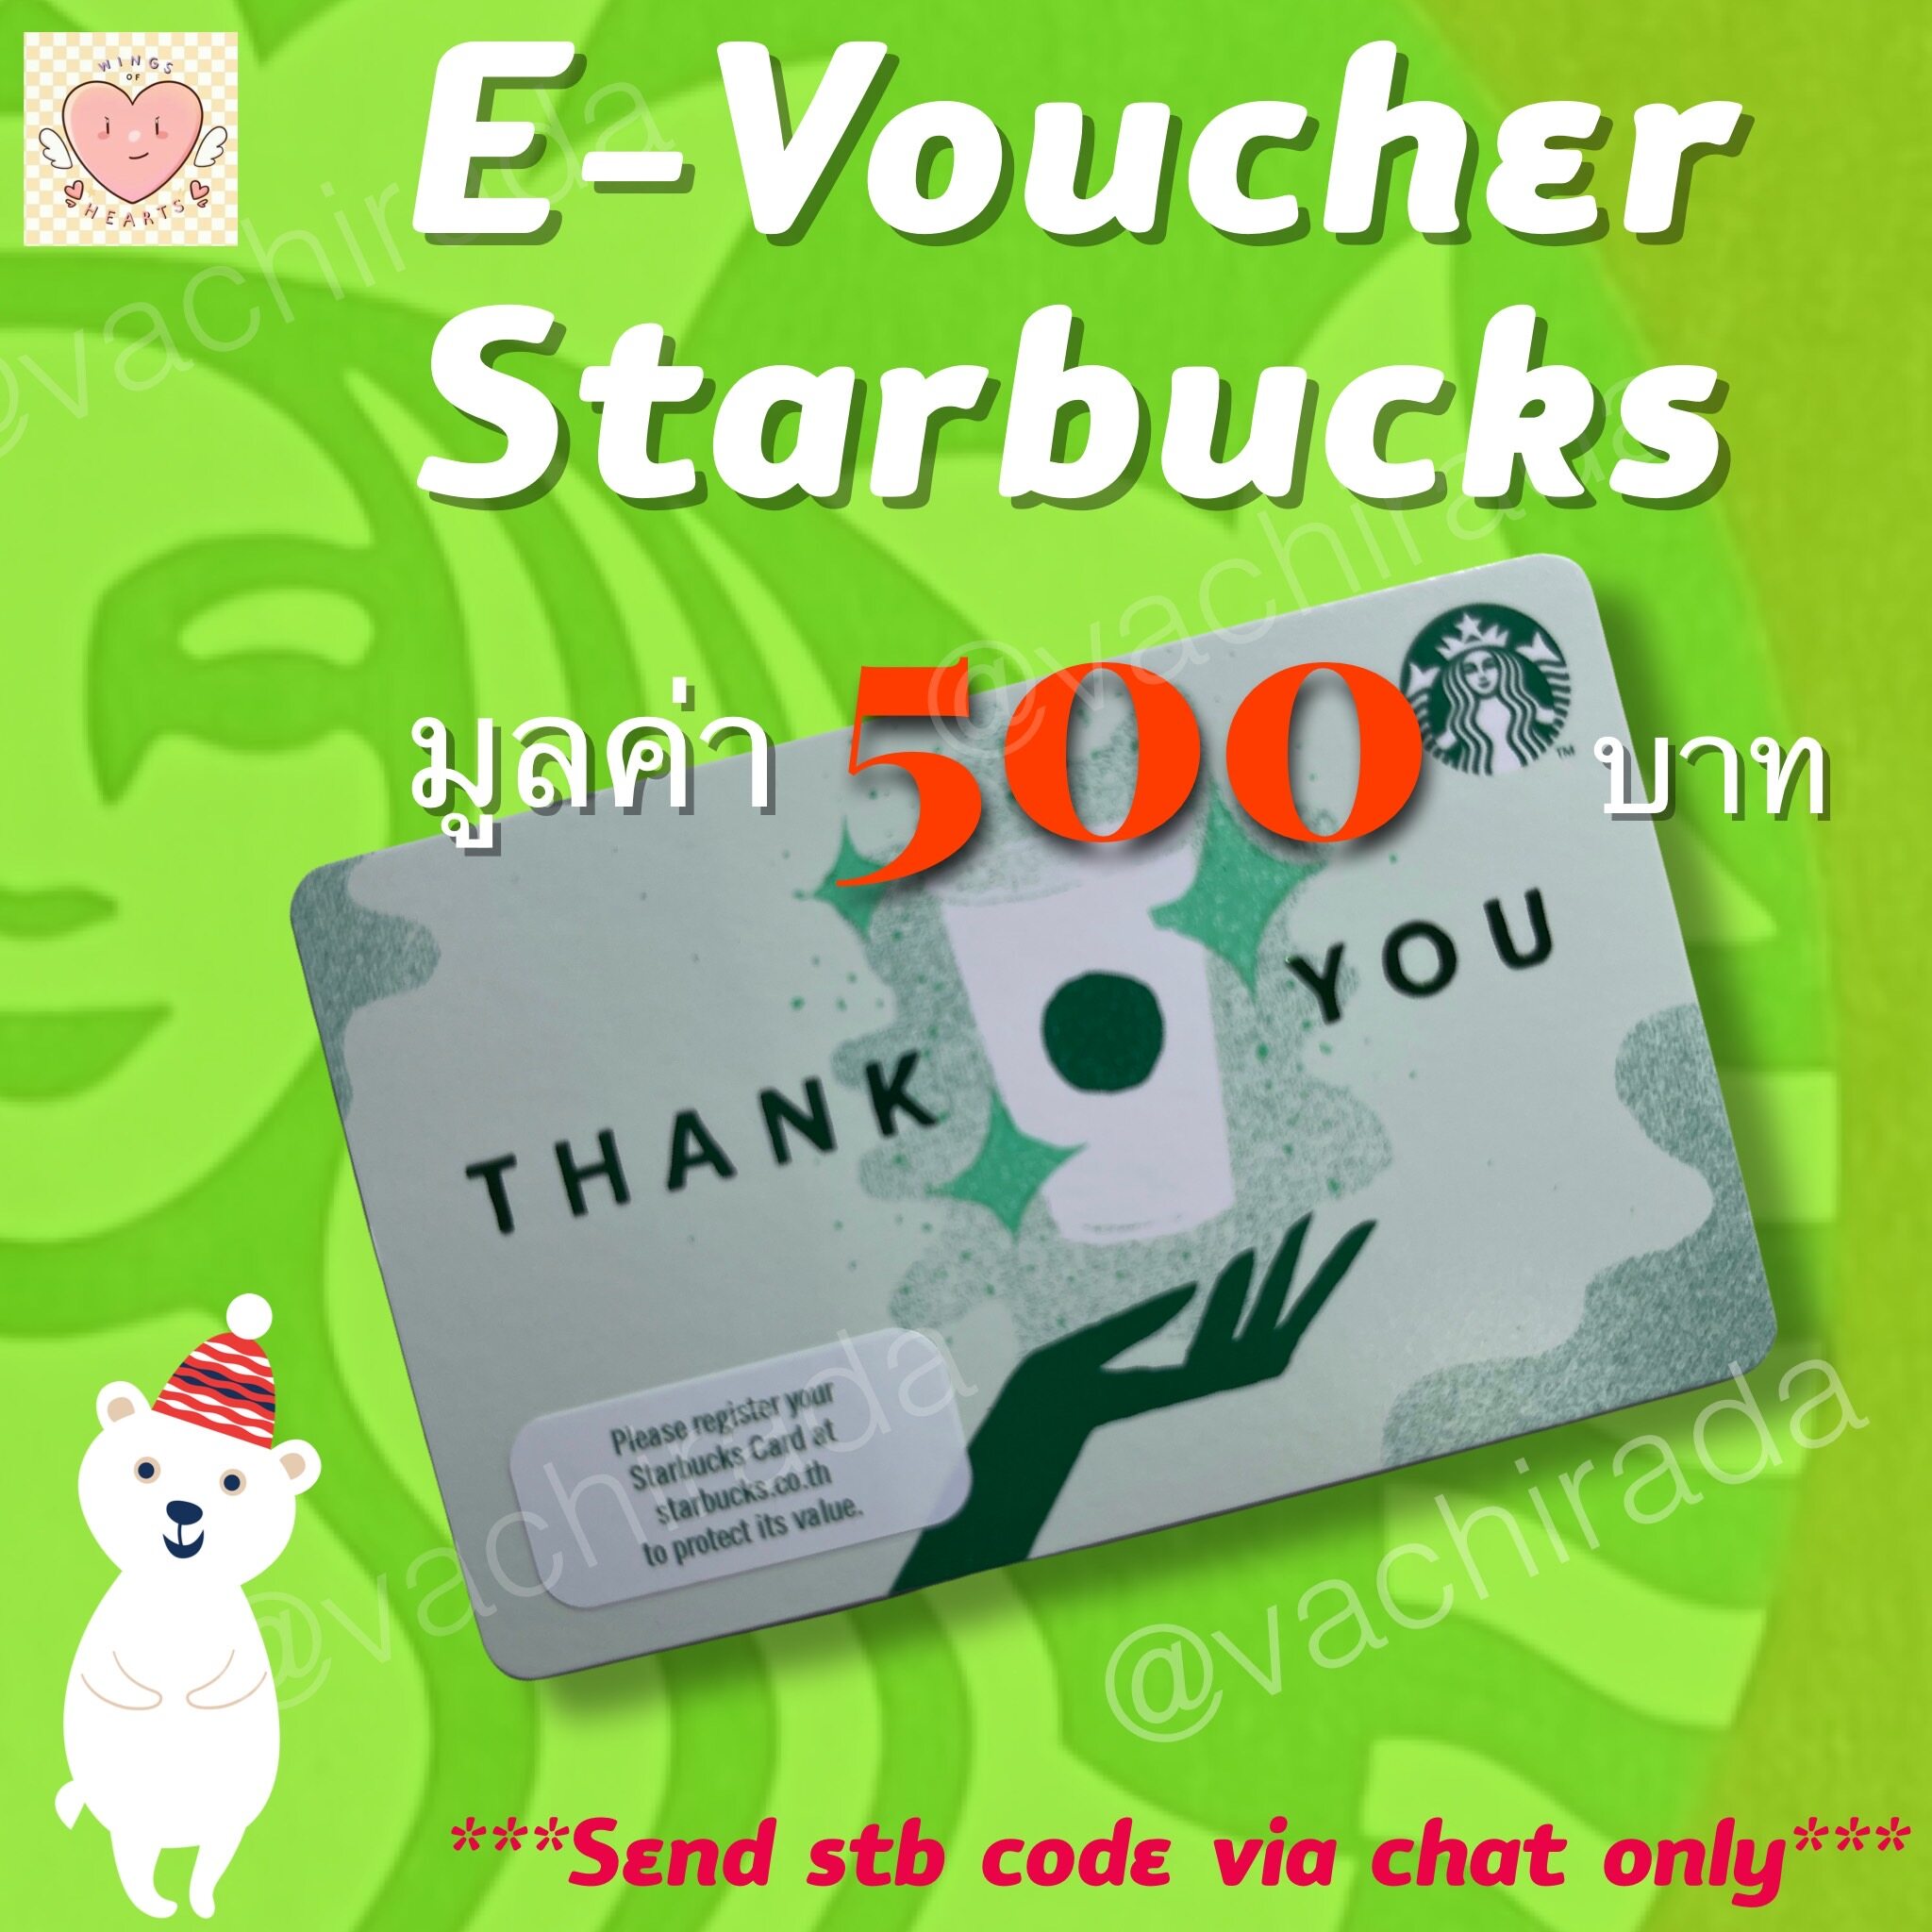 ภาพประกอบของ E-Vo บัตรสตาร์บัค มูลค่า 500 บาท ***ส่งรหัสทางแชทเท่านั้น***